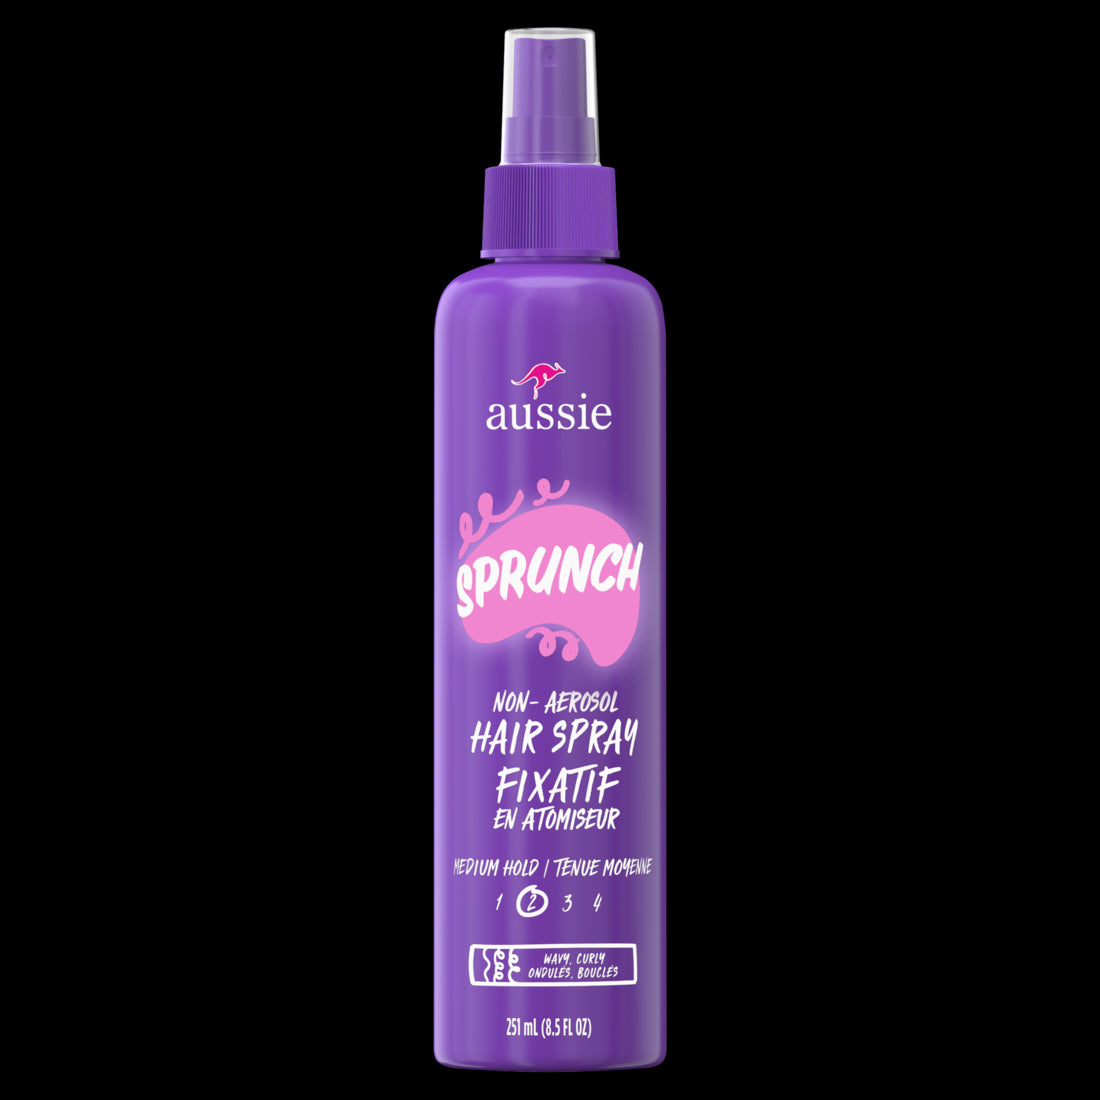 Aussie Sprunch Non-Aerosol Hair Spray for Curly Hair and Wavy Hair - 8.5oz/12pk